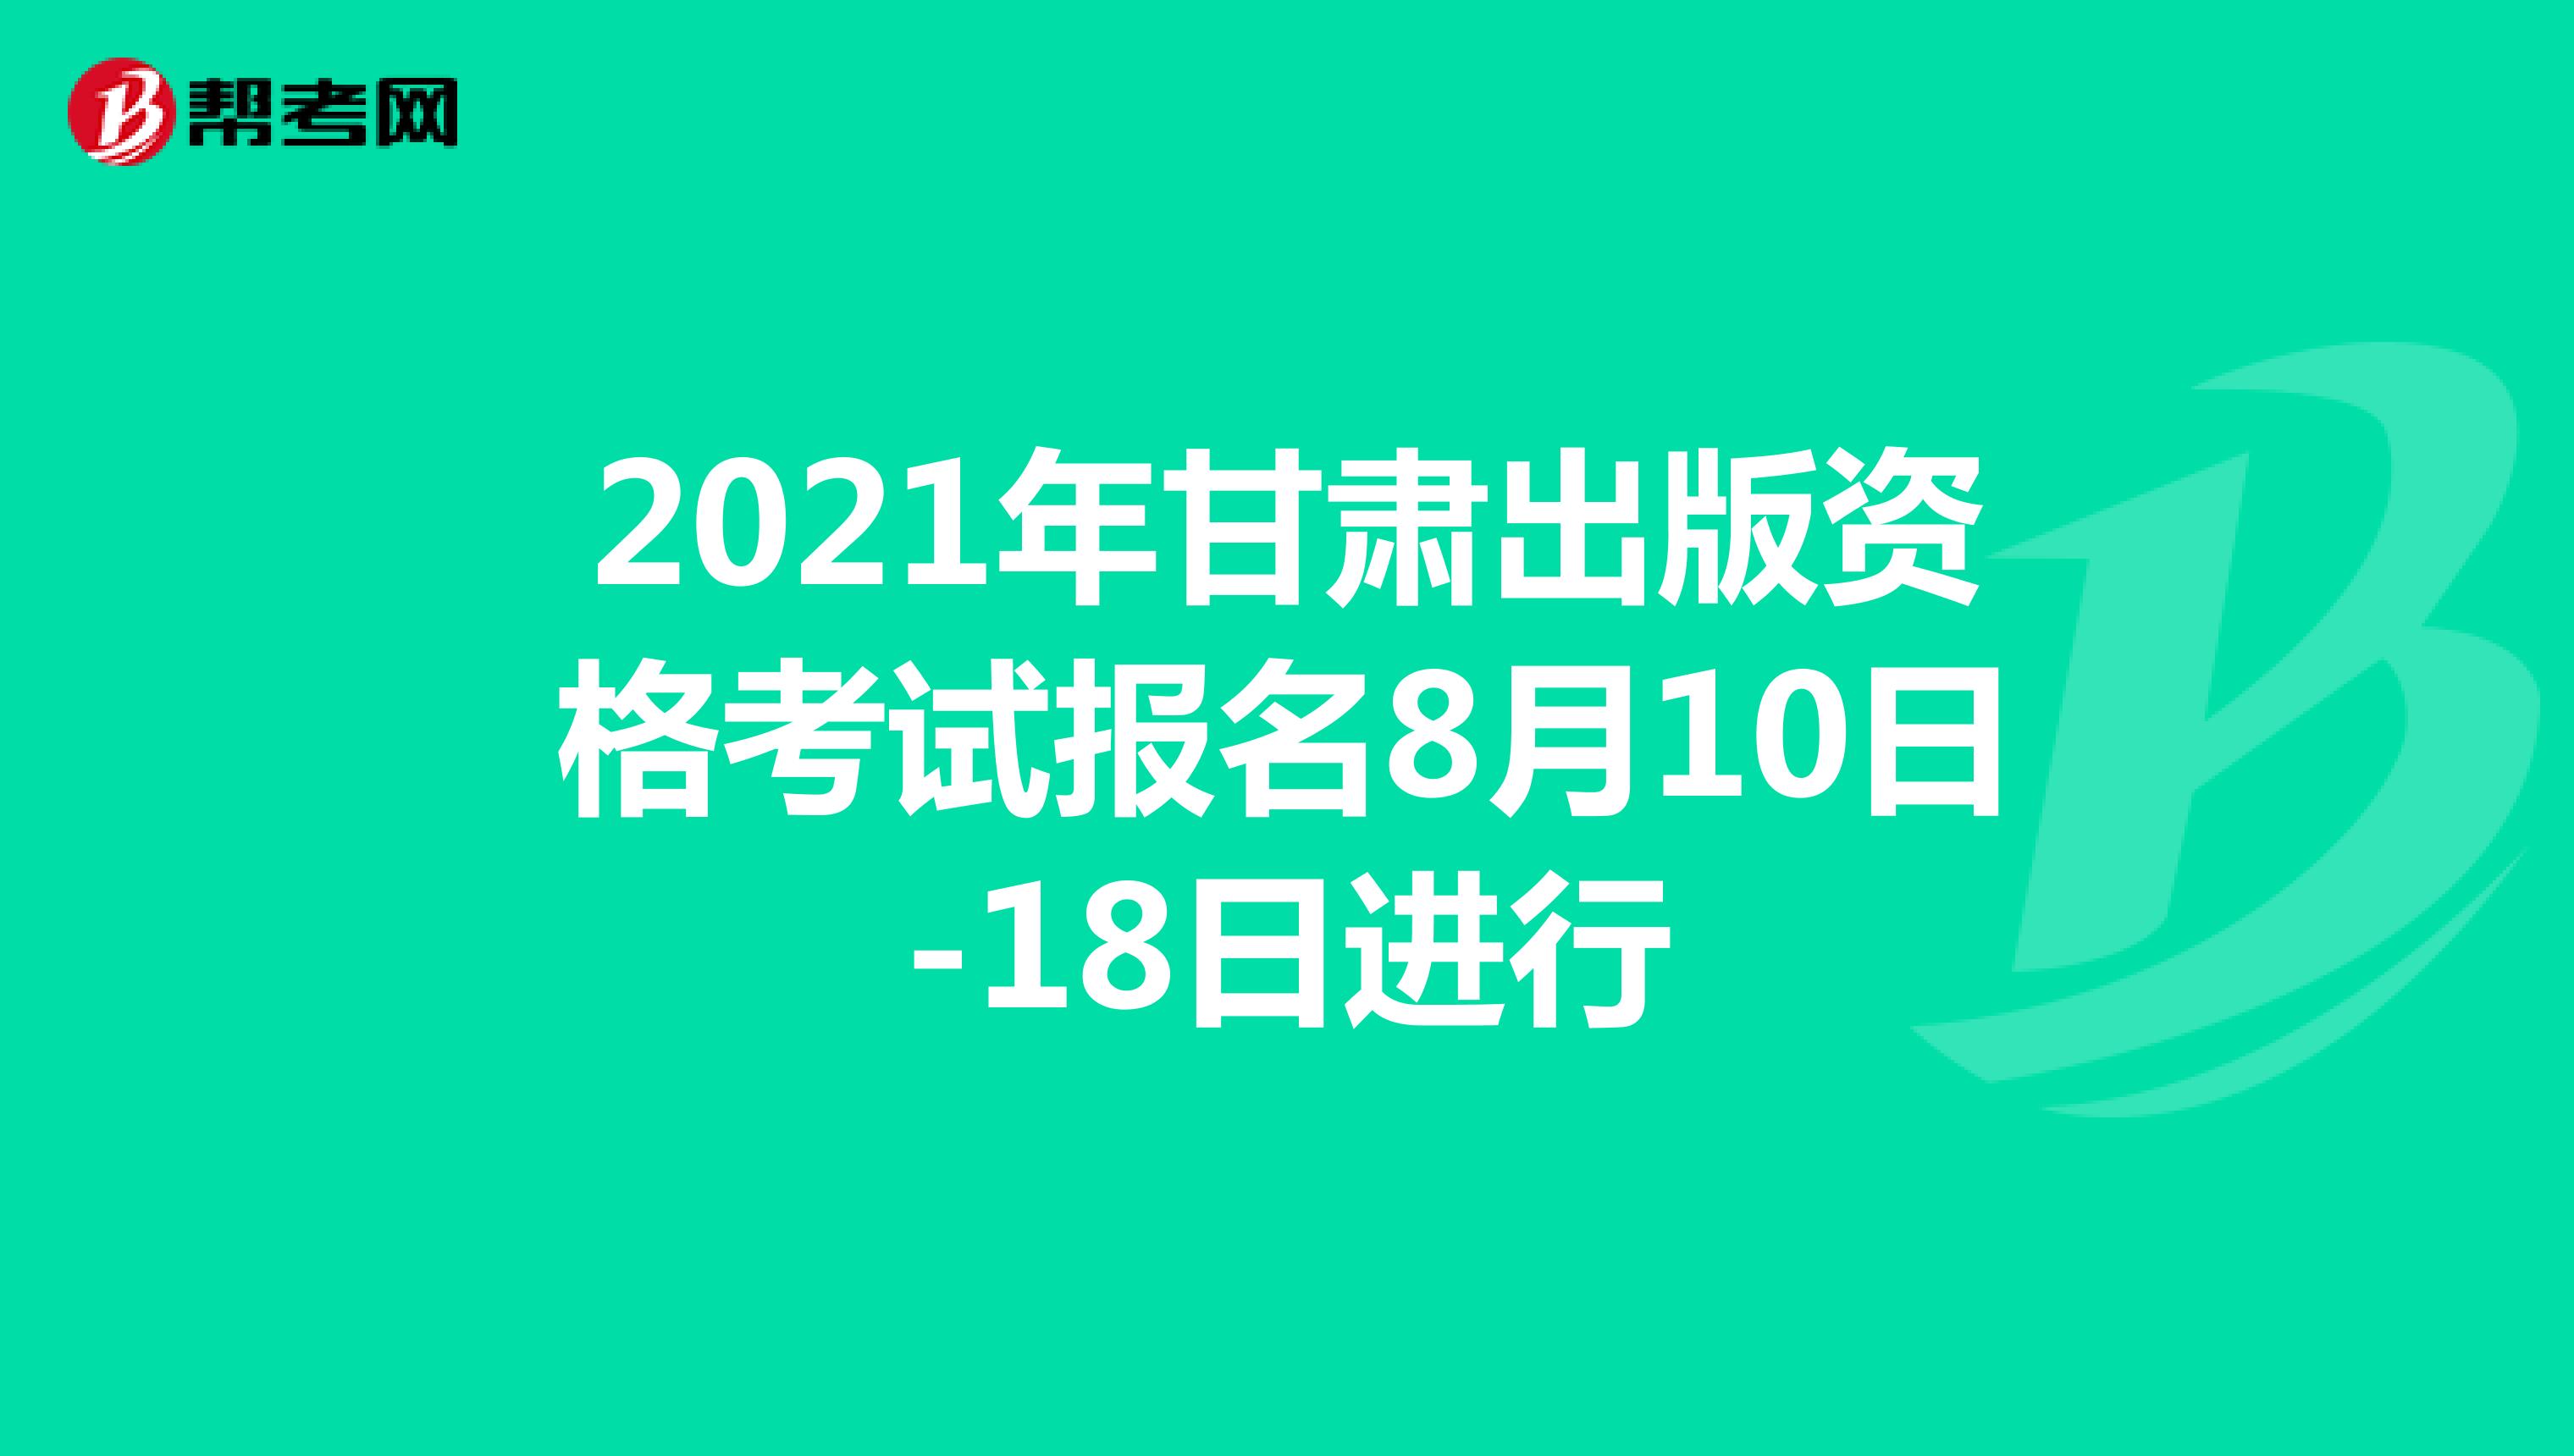 2021年甘肃出版资格考试报名8月10日-18日进行